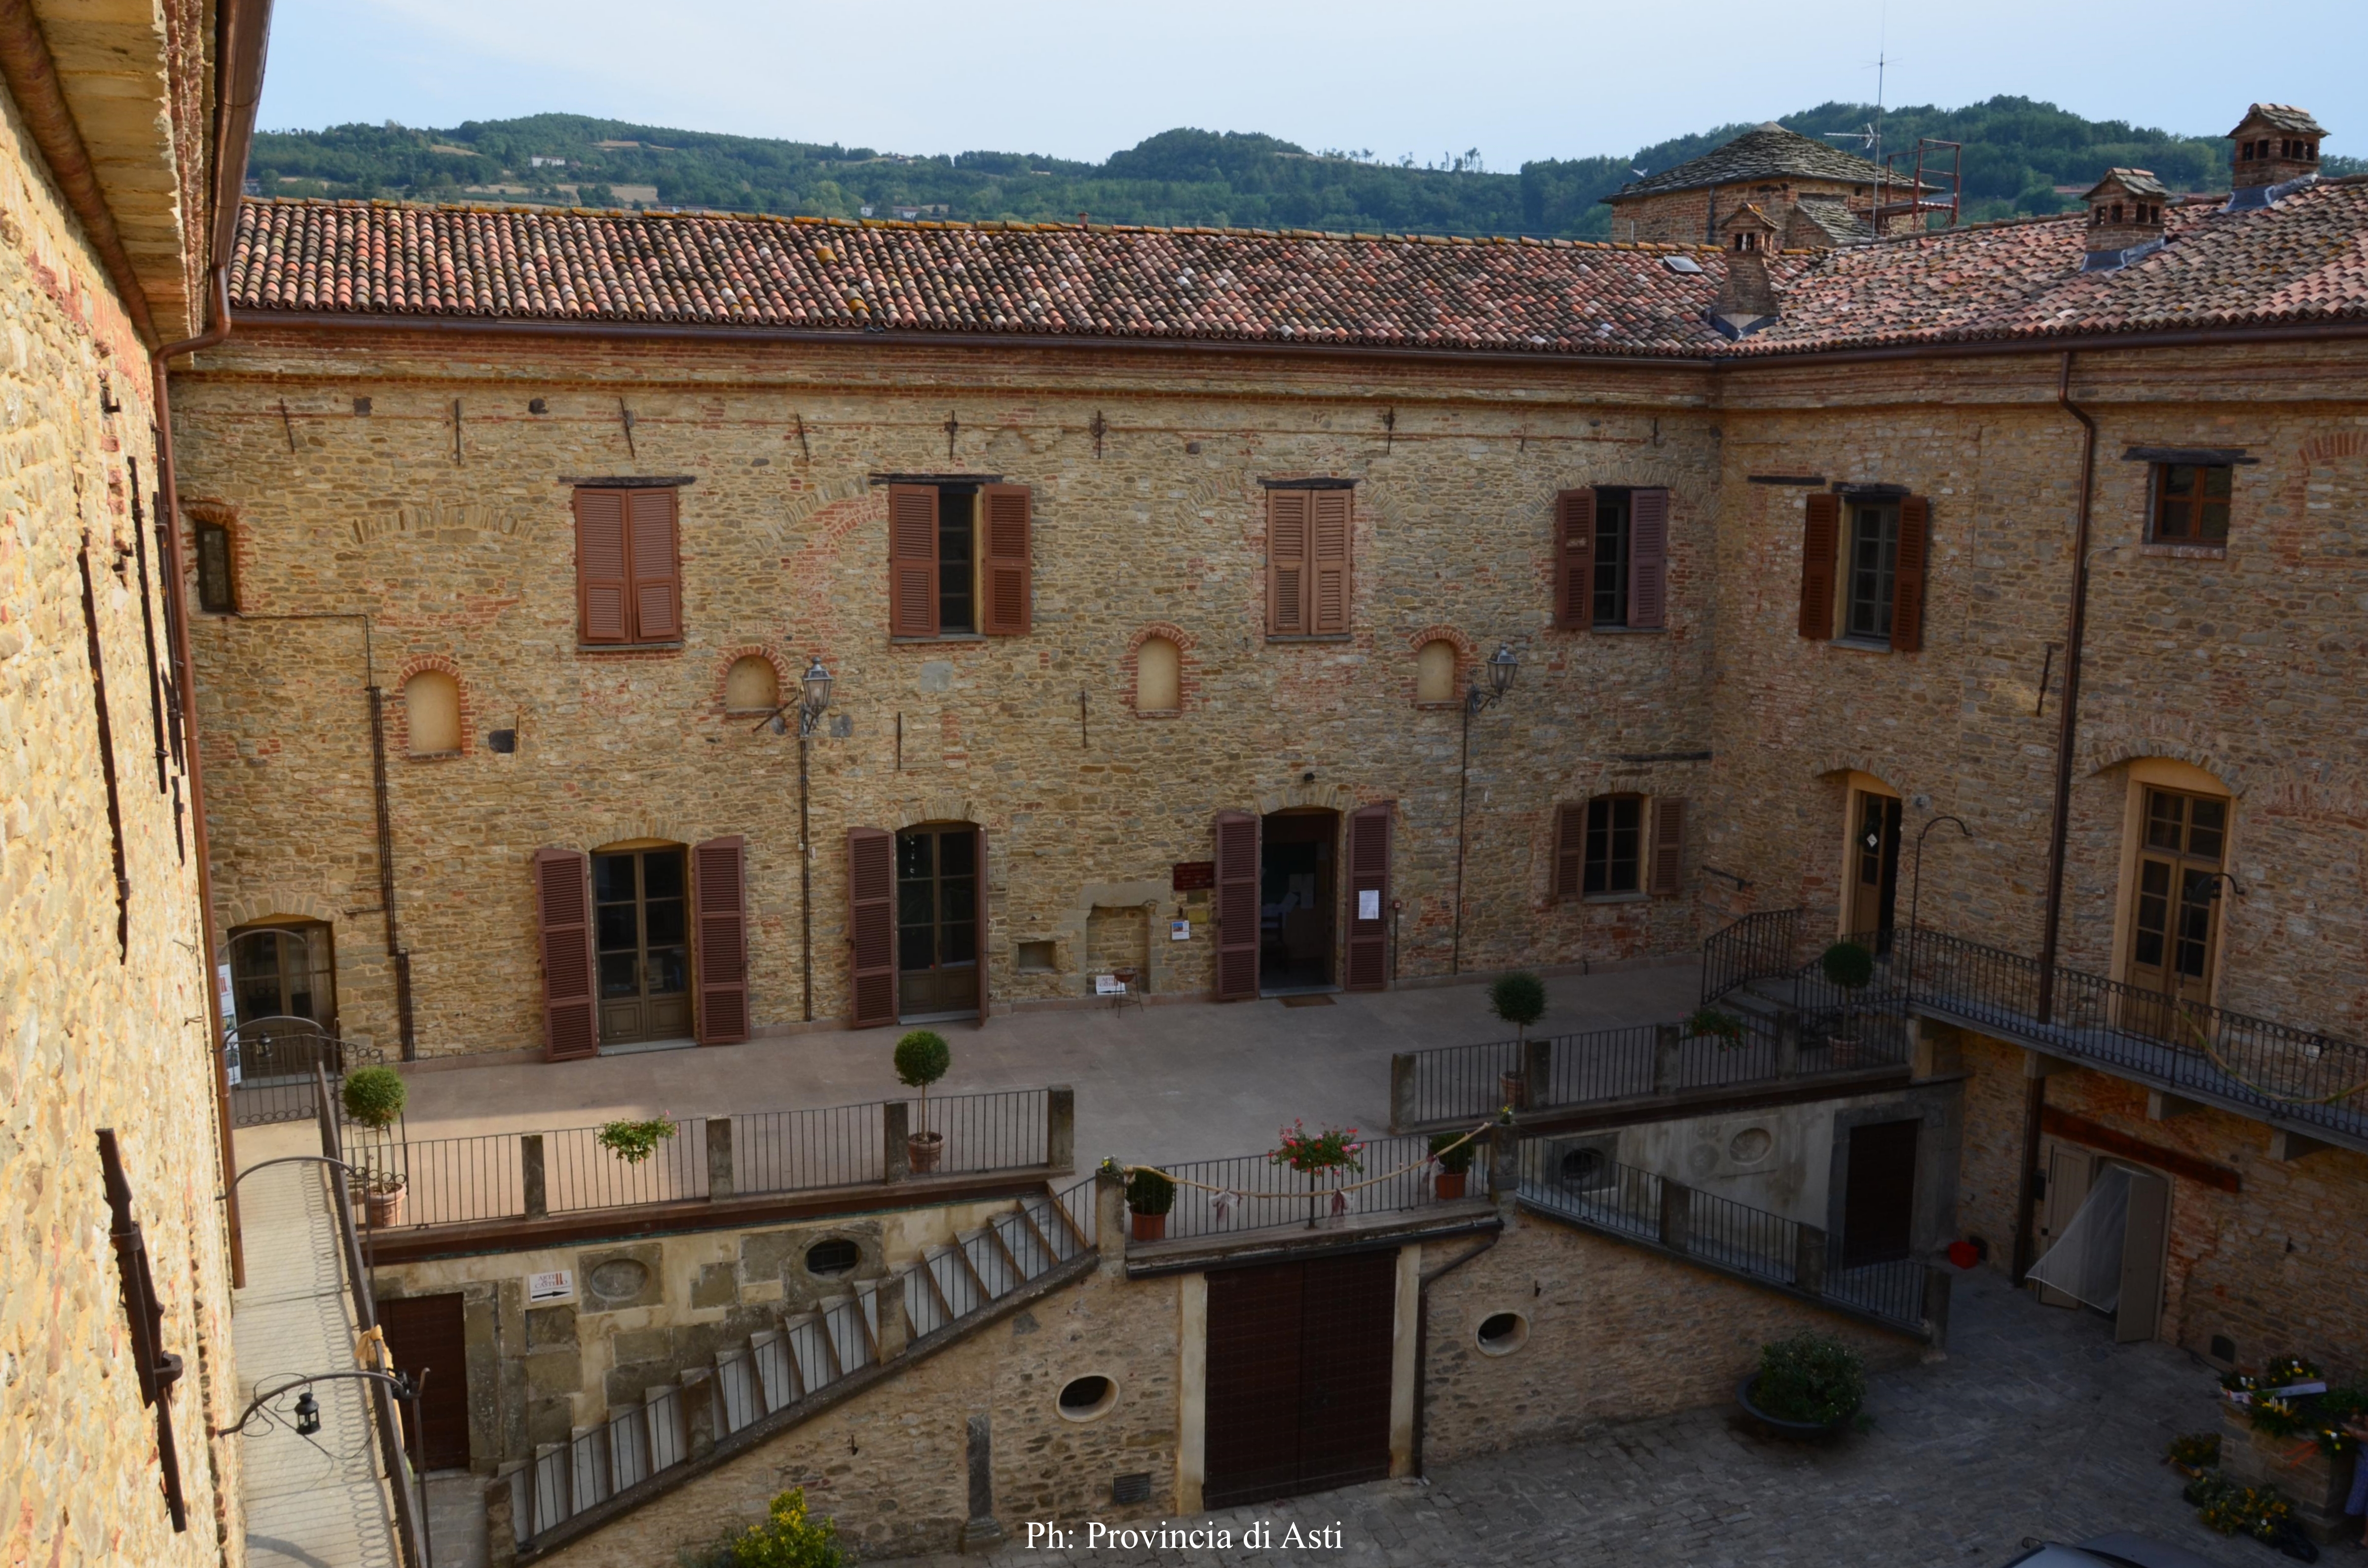 Trasloco per gli uffici comunali di Monastero Bormida: una prima fase della musealizzazione del piano nobile del castello